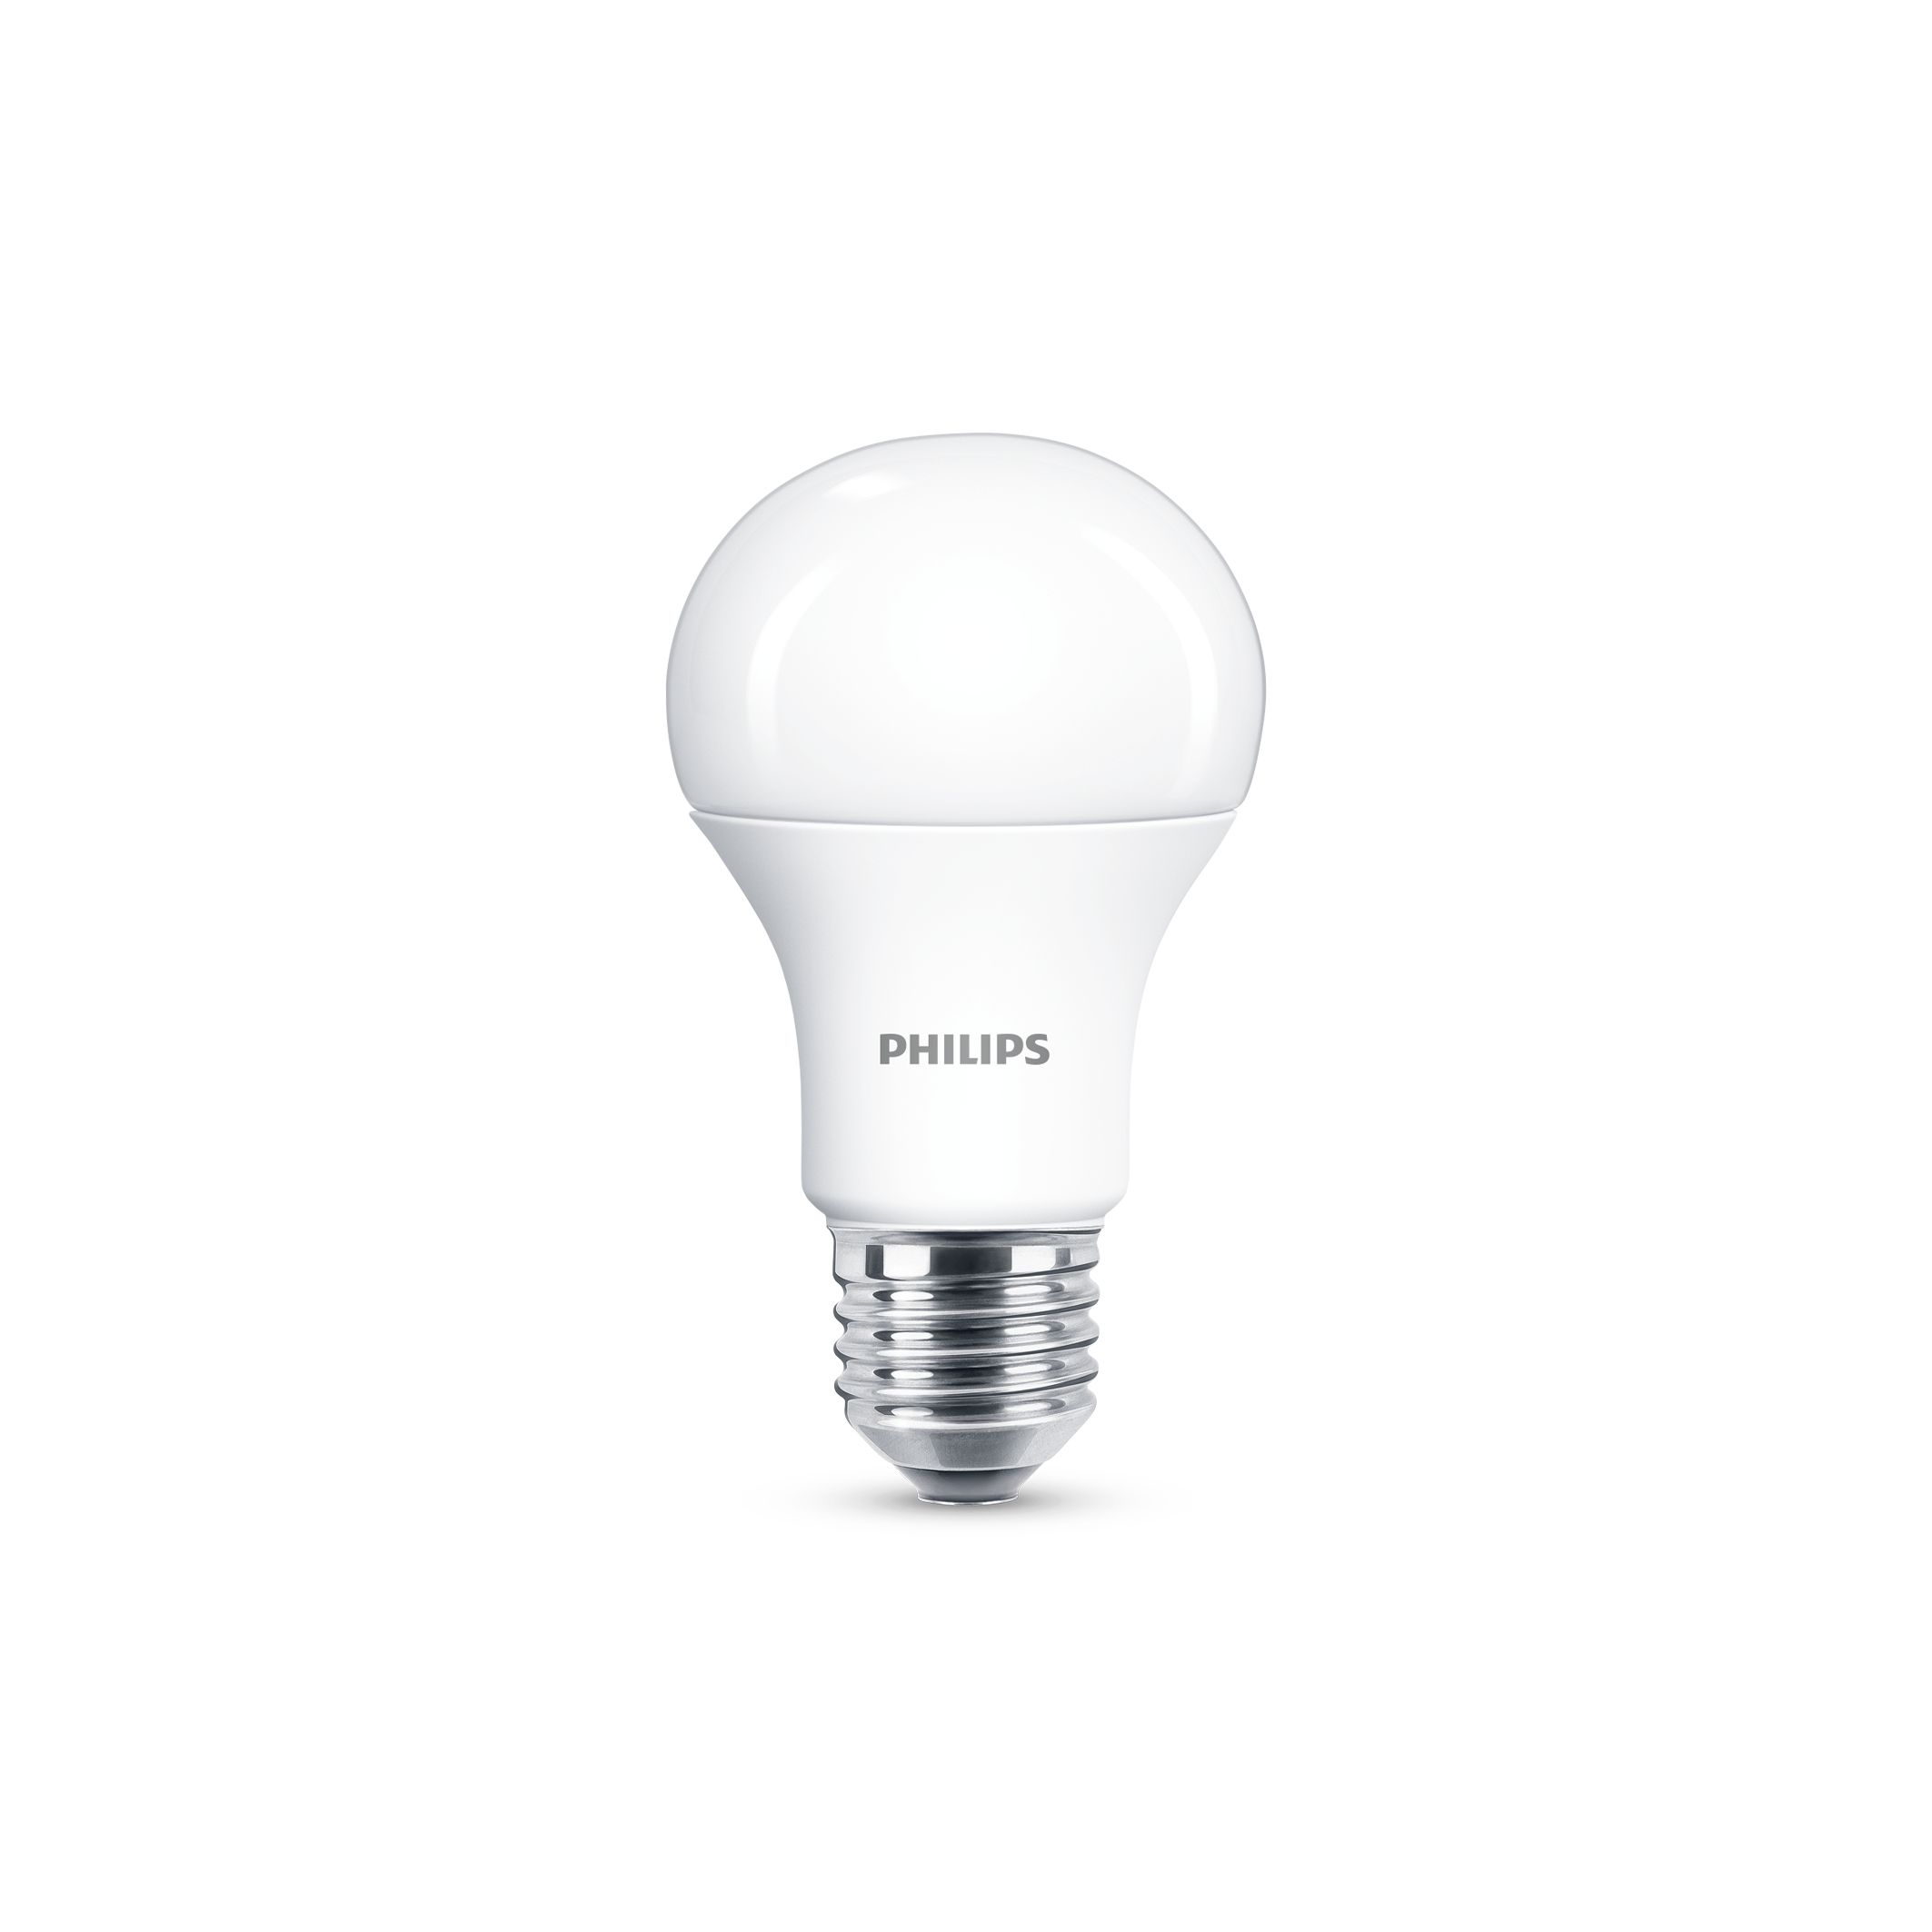 Ødelægge Plateau kan ikke se Standard LED bulbs | 6979538 | Philips lighting